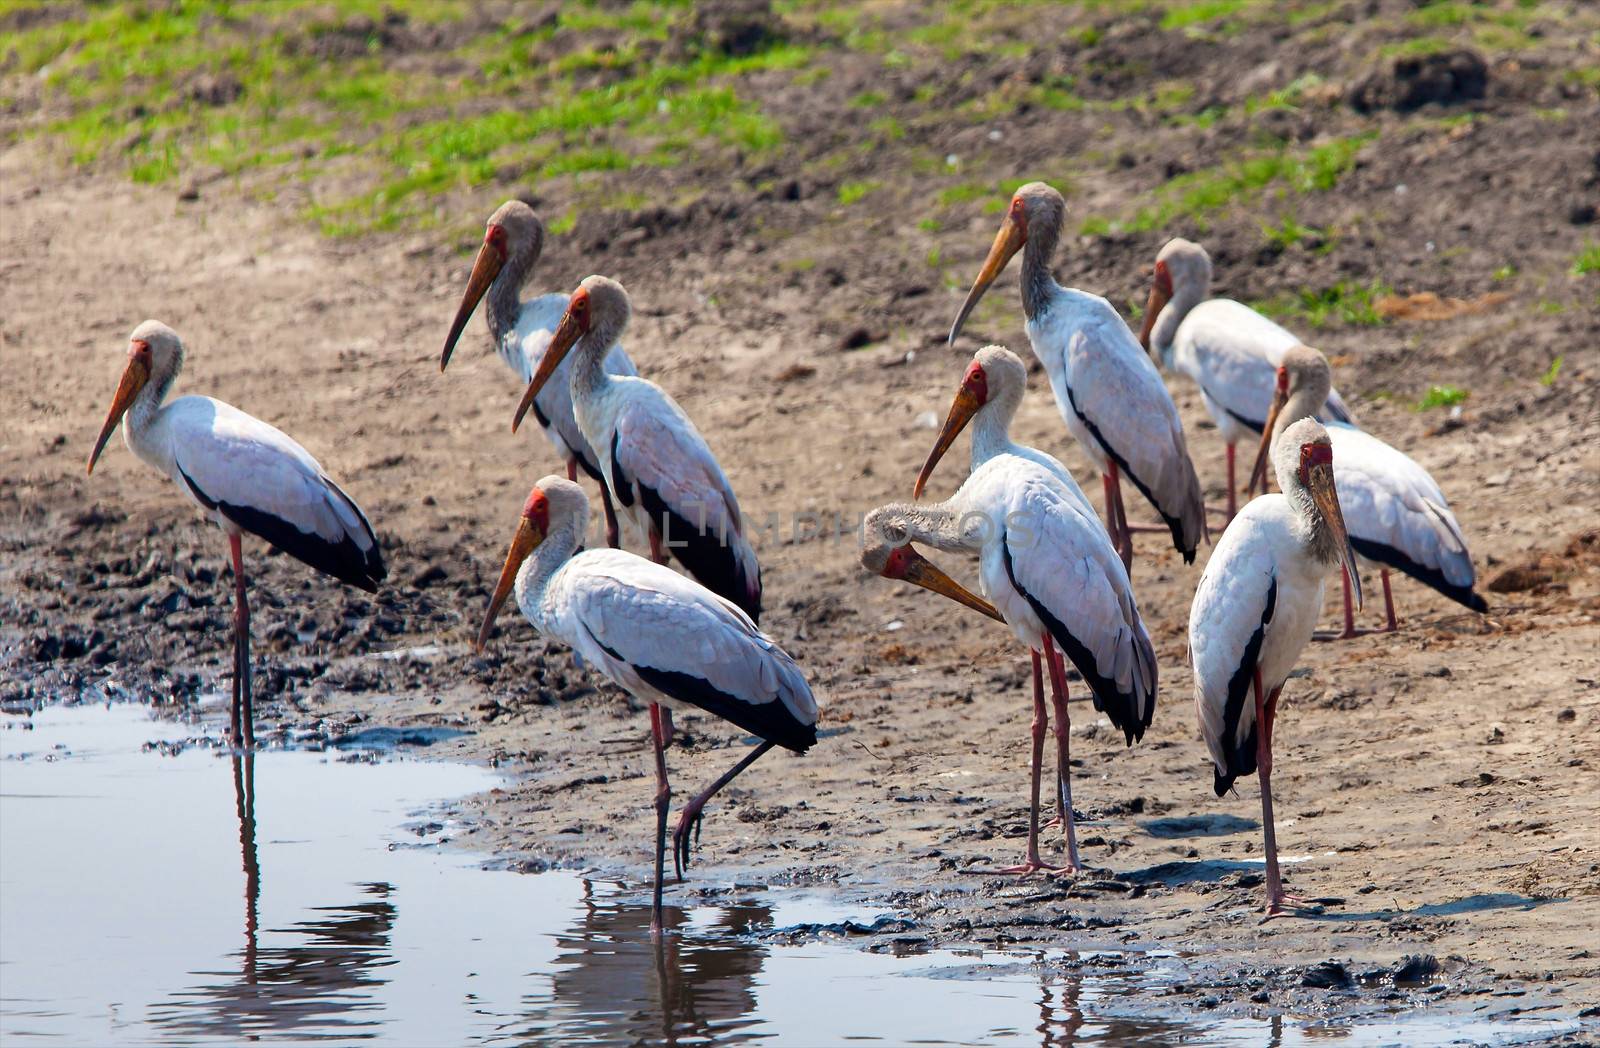 Birds of tanzania by moizhusein